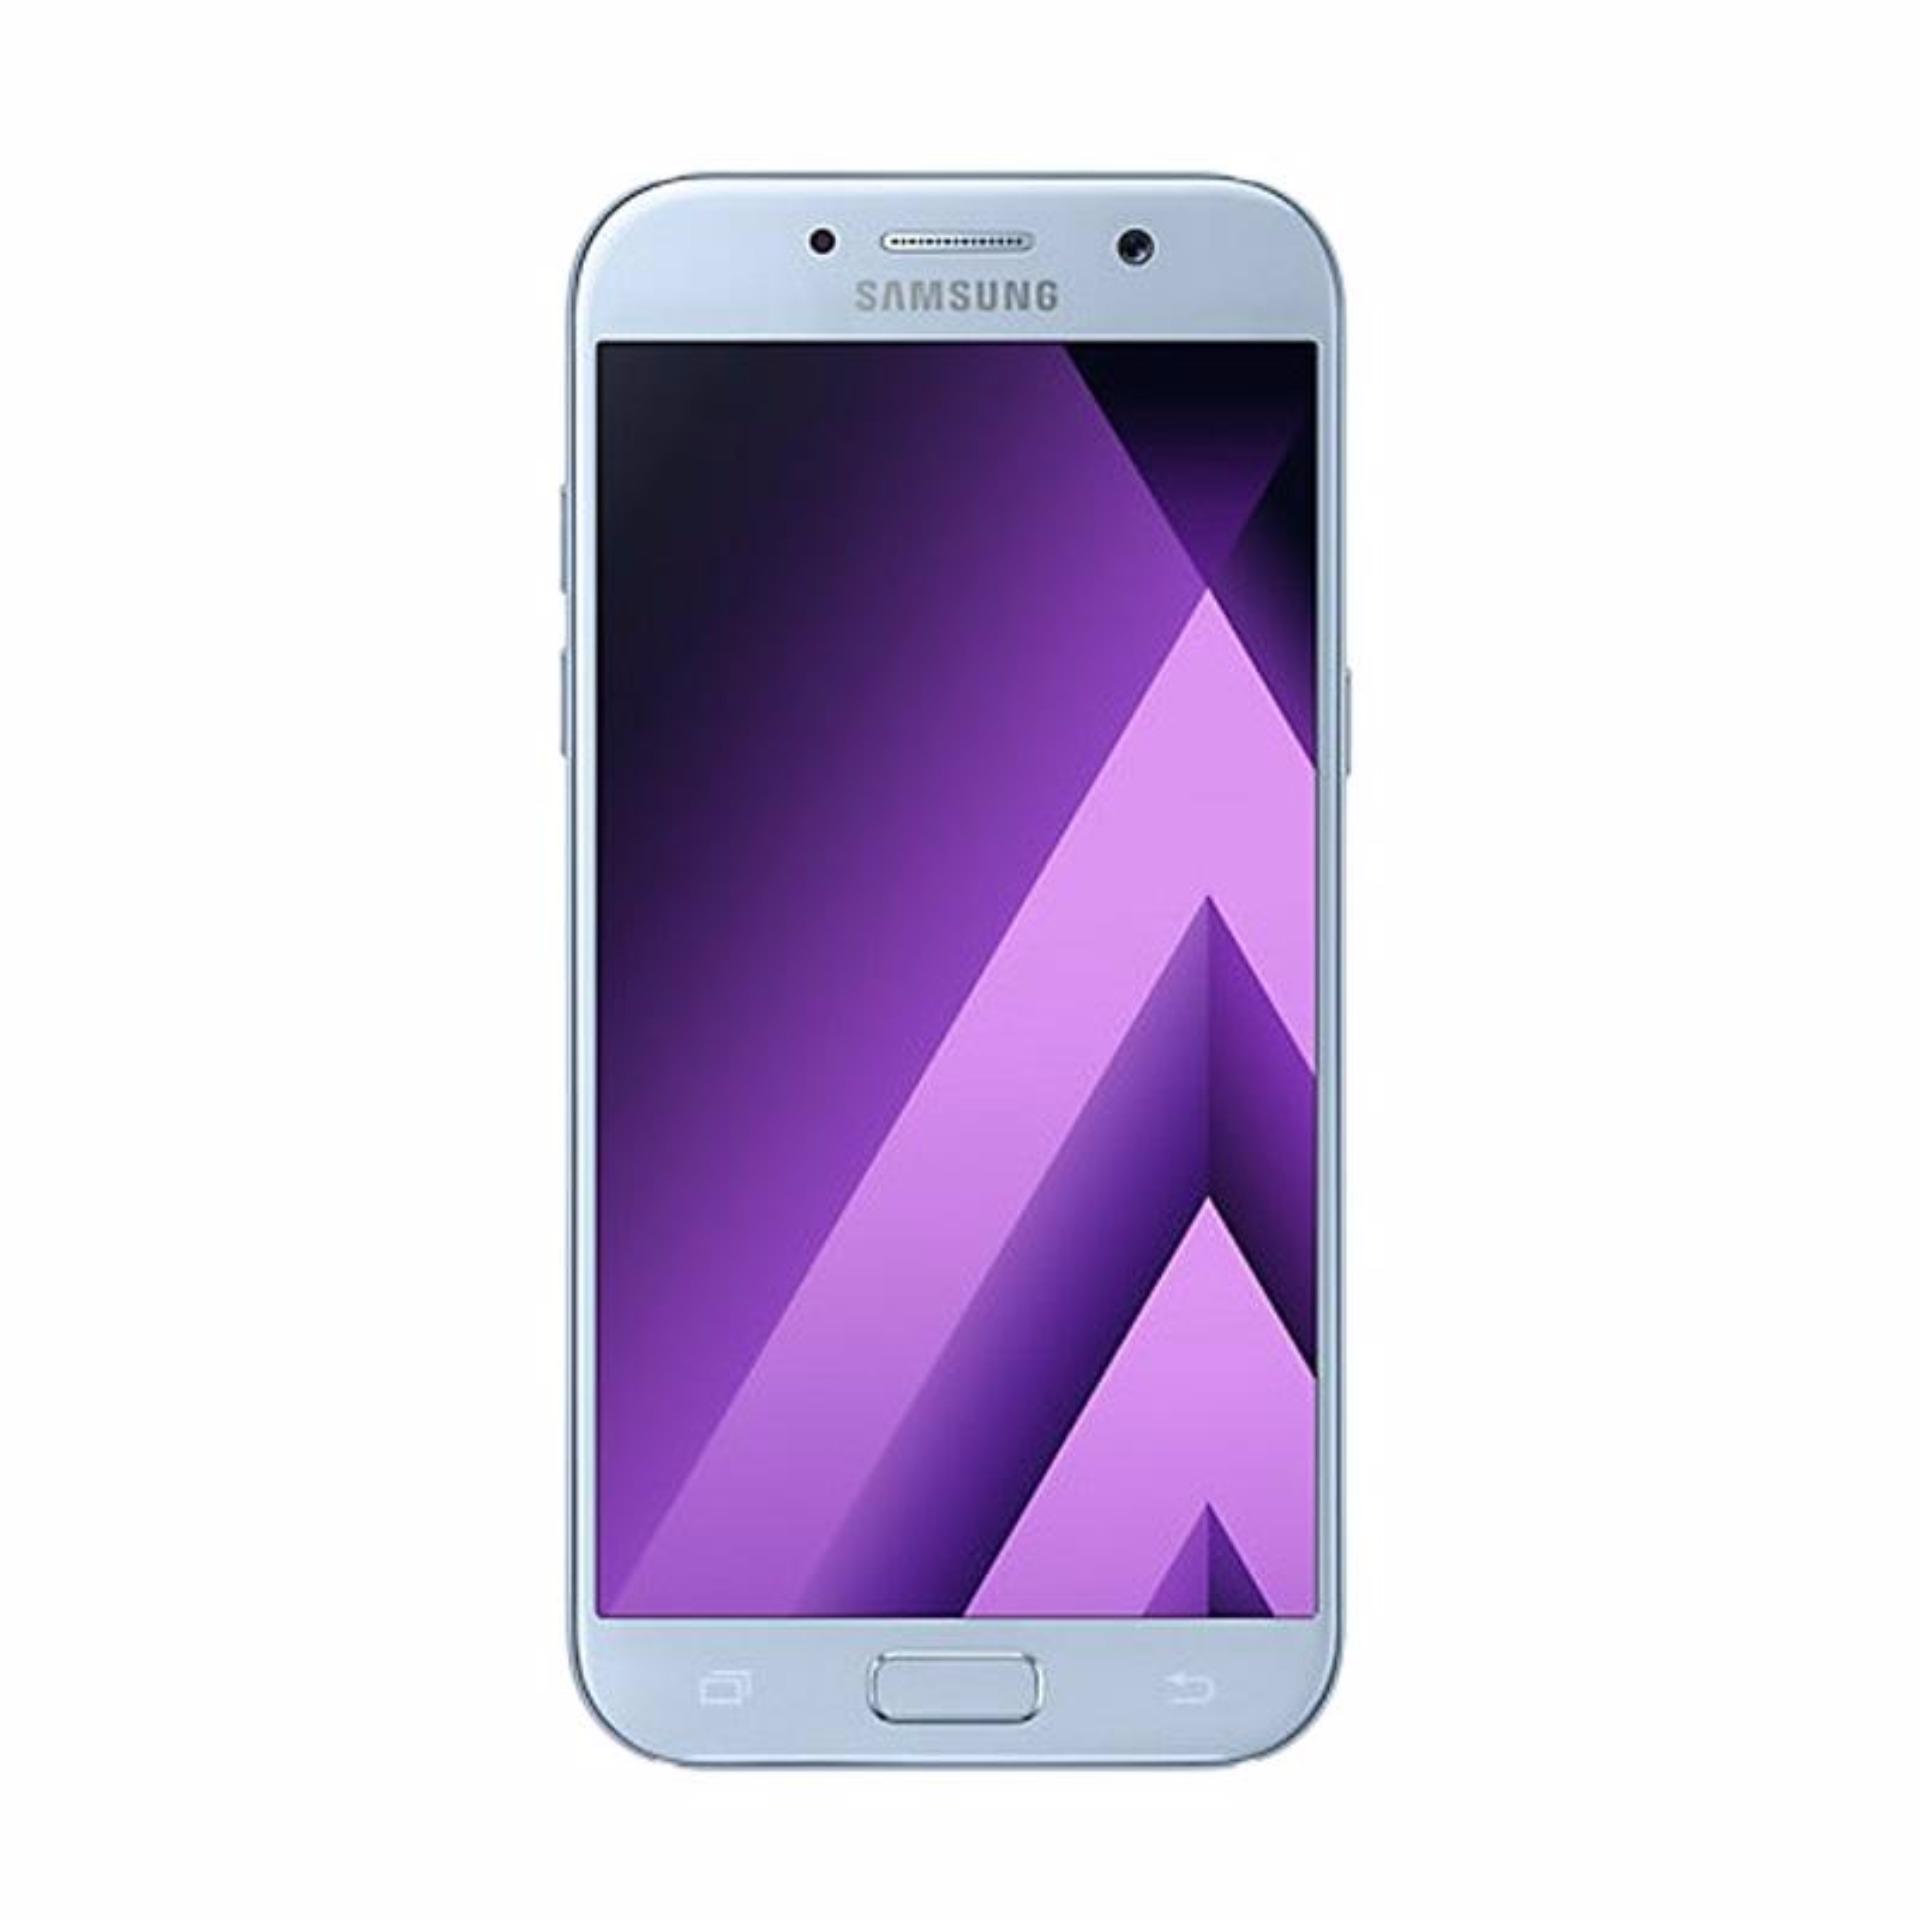  Samsung Galaxy A3 2017 SM-A320 Smartphone - [16 GB/2 GB]   